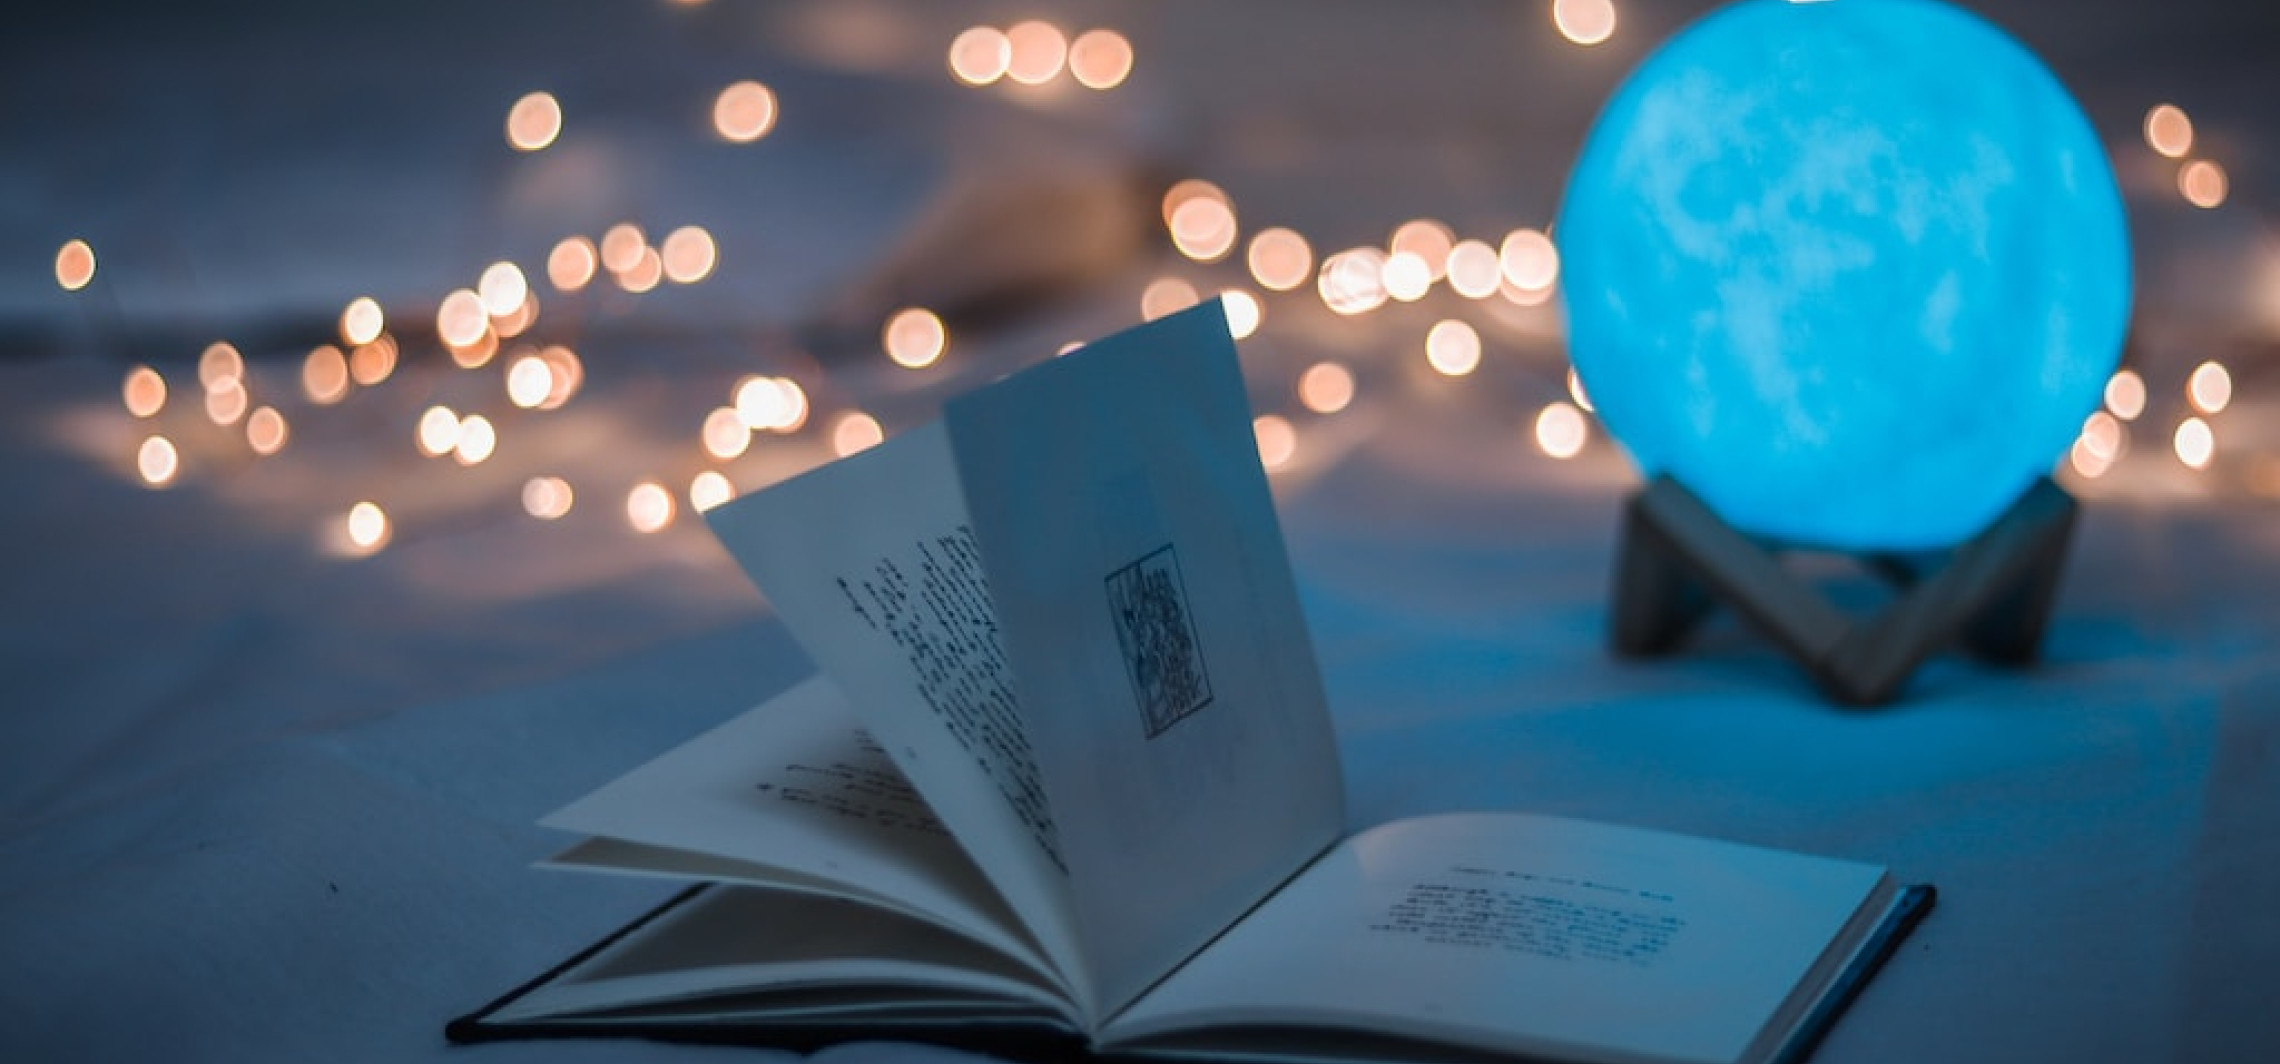 Region - Książka na prezent świąteczny - idealny wybór dla miłośników literatury